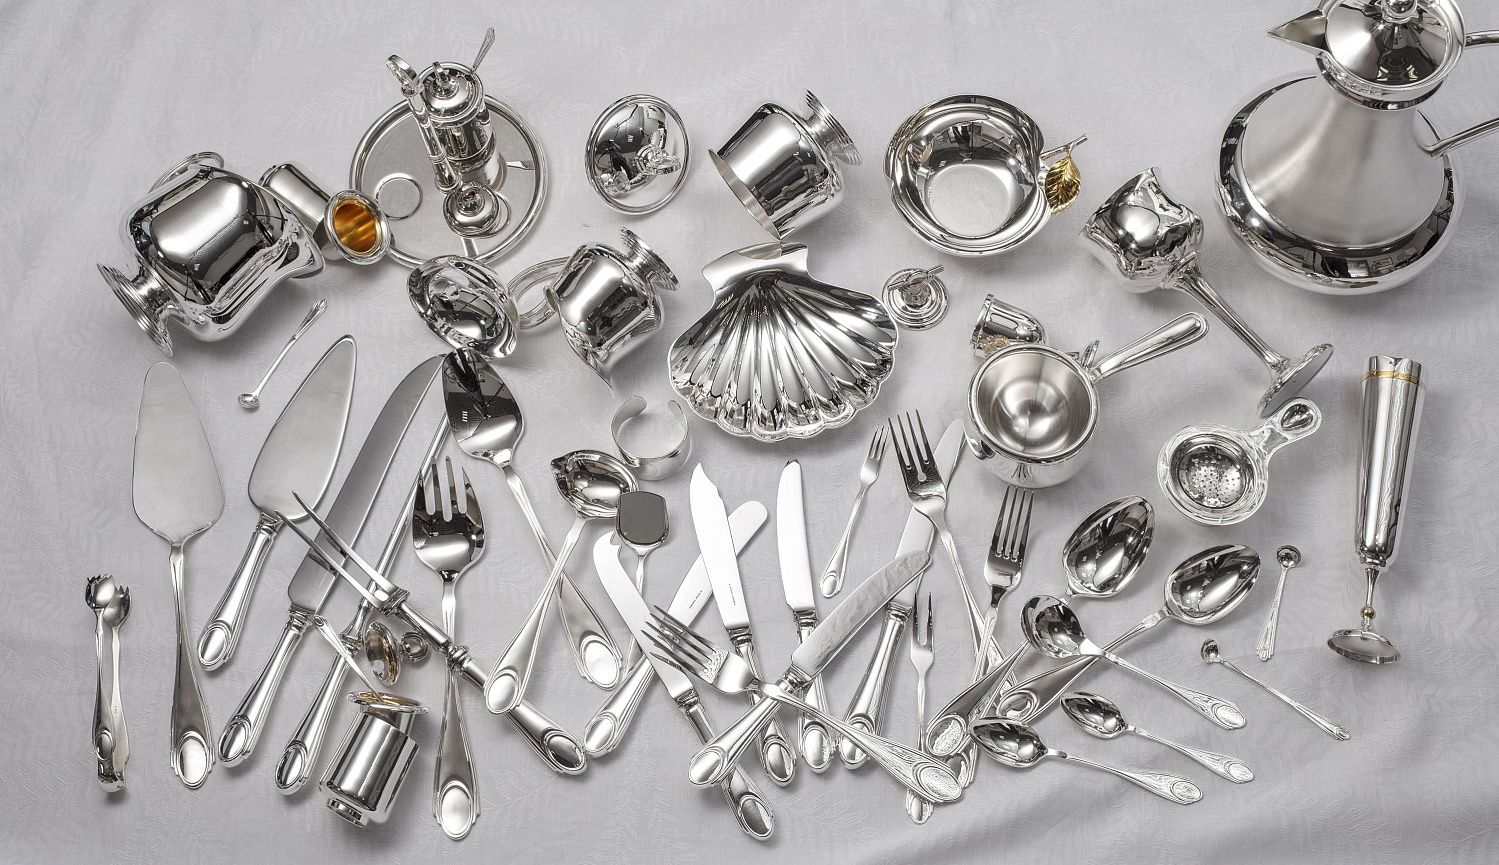 Как почистить столовое серебро в домашних условиях быстро и без сложных манипуляций